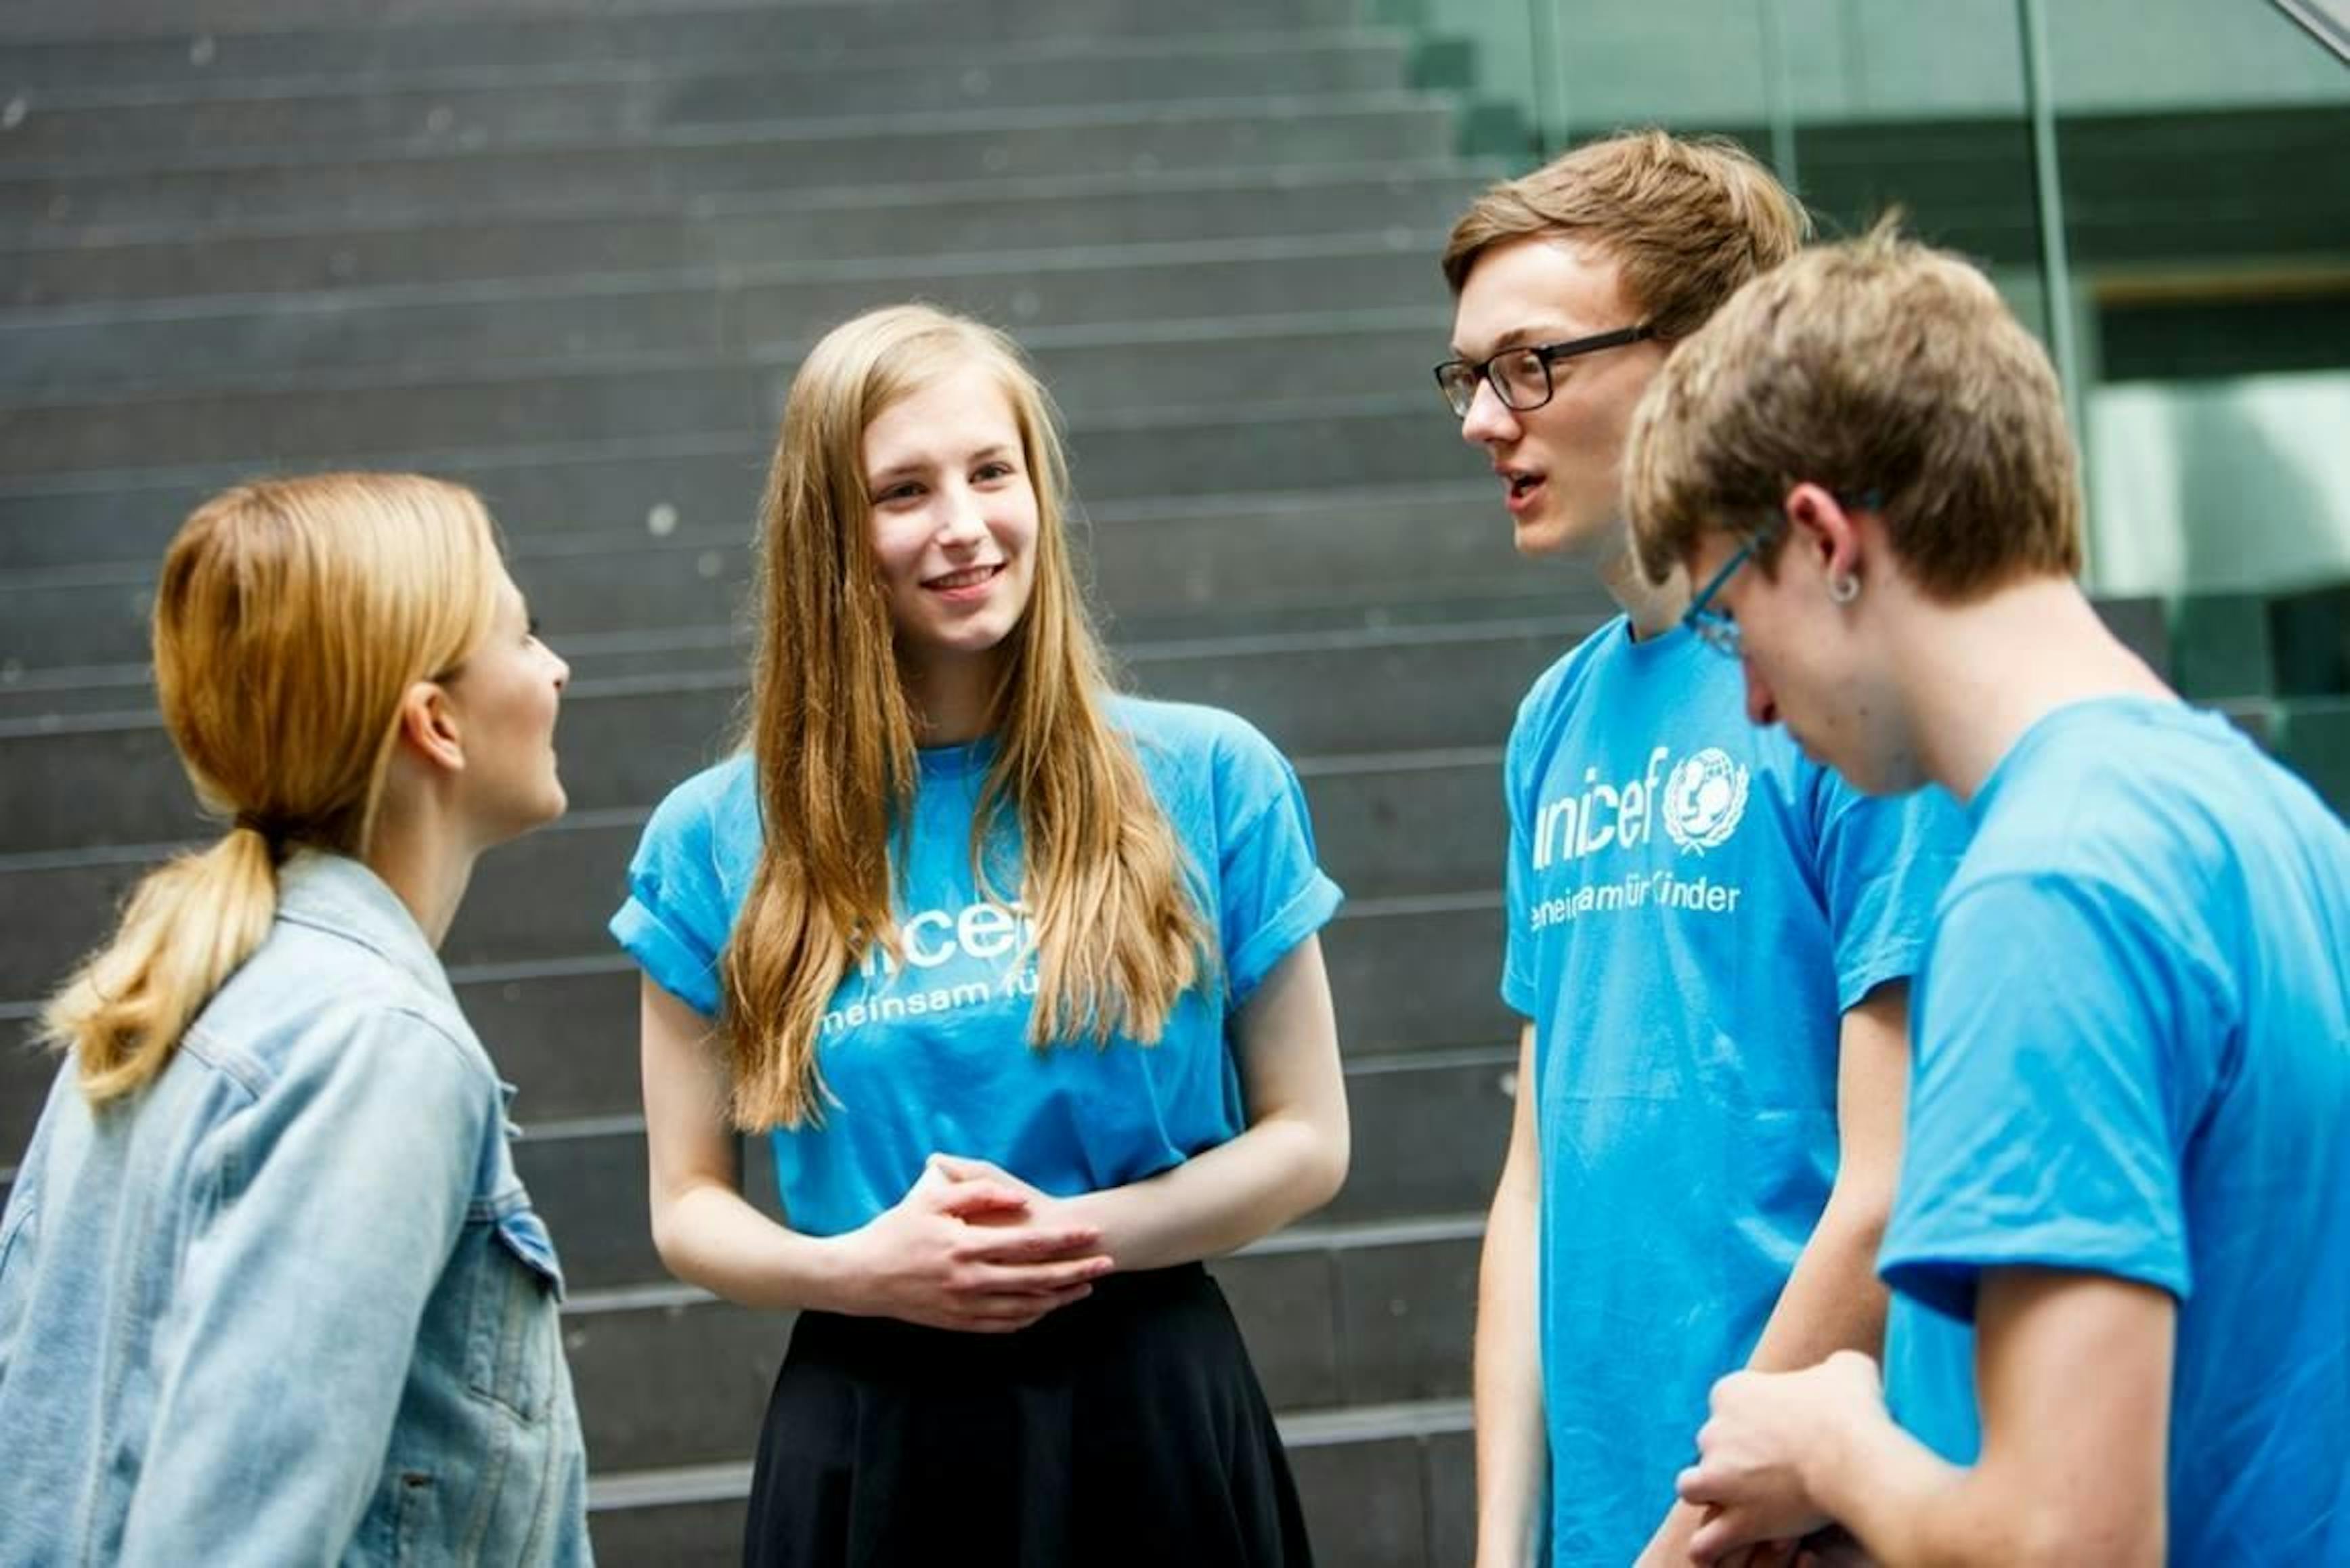 Eva Padberg (Ambasciatore dell'UNICEF), Jasmin Vogt , Lasse Schroeders e Nilson Vogt (tutti UNICEF JuniorBeirat) consegnano i libretti di Voices of Youth al Ministro federale tedesco